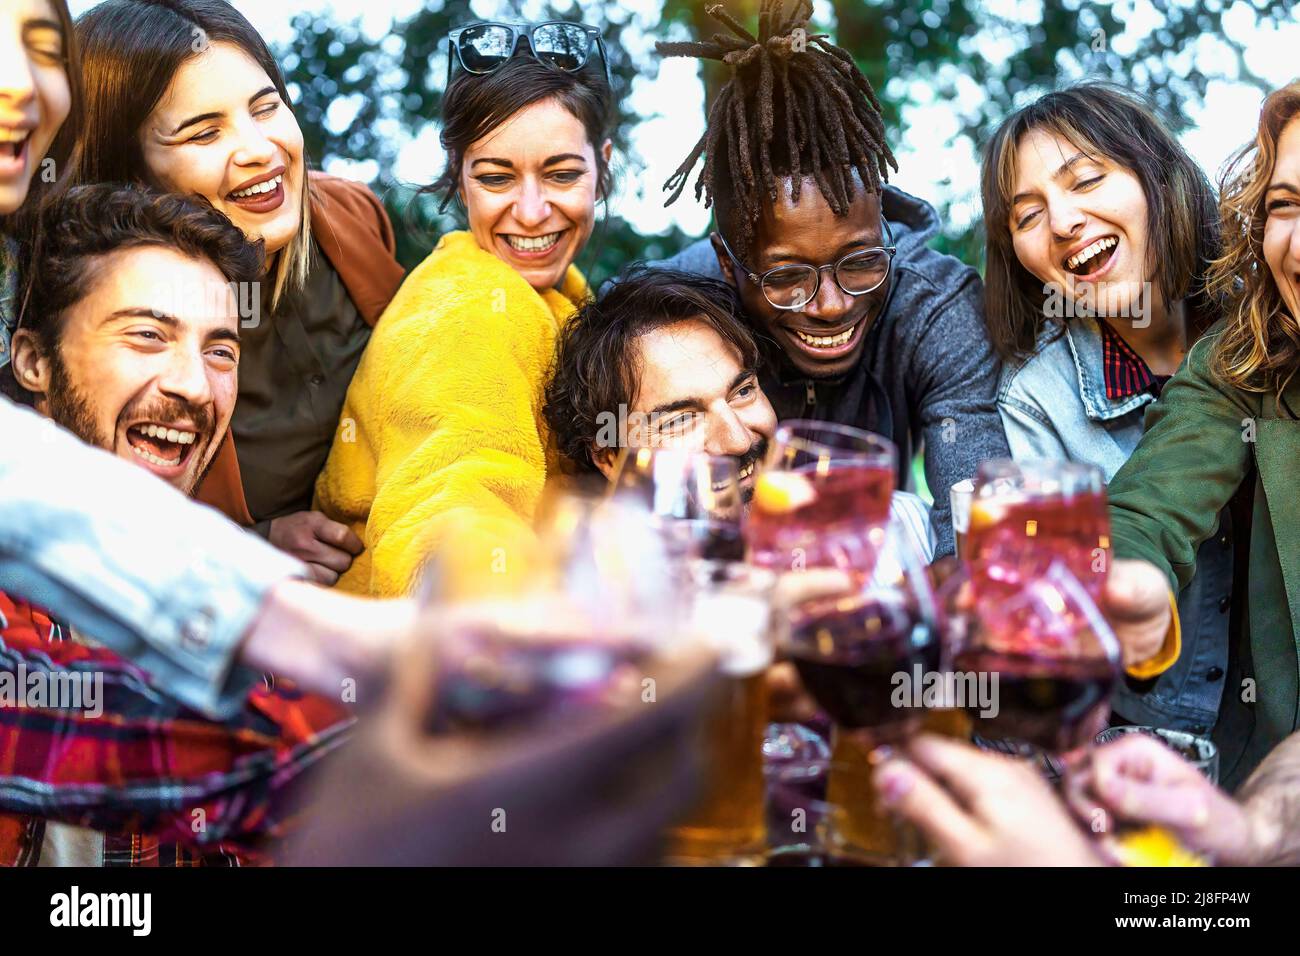 Multiethnische Gruppe von begeisterten jungen Menschen, die gemeinsam Wein und Bier auf der Geburtstagsfeier auf der Terrasse genießen - Lifestyle-Konzept der Multigeneration Stockfoto